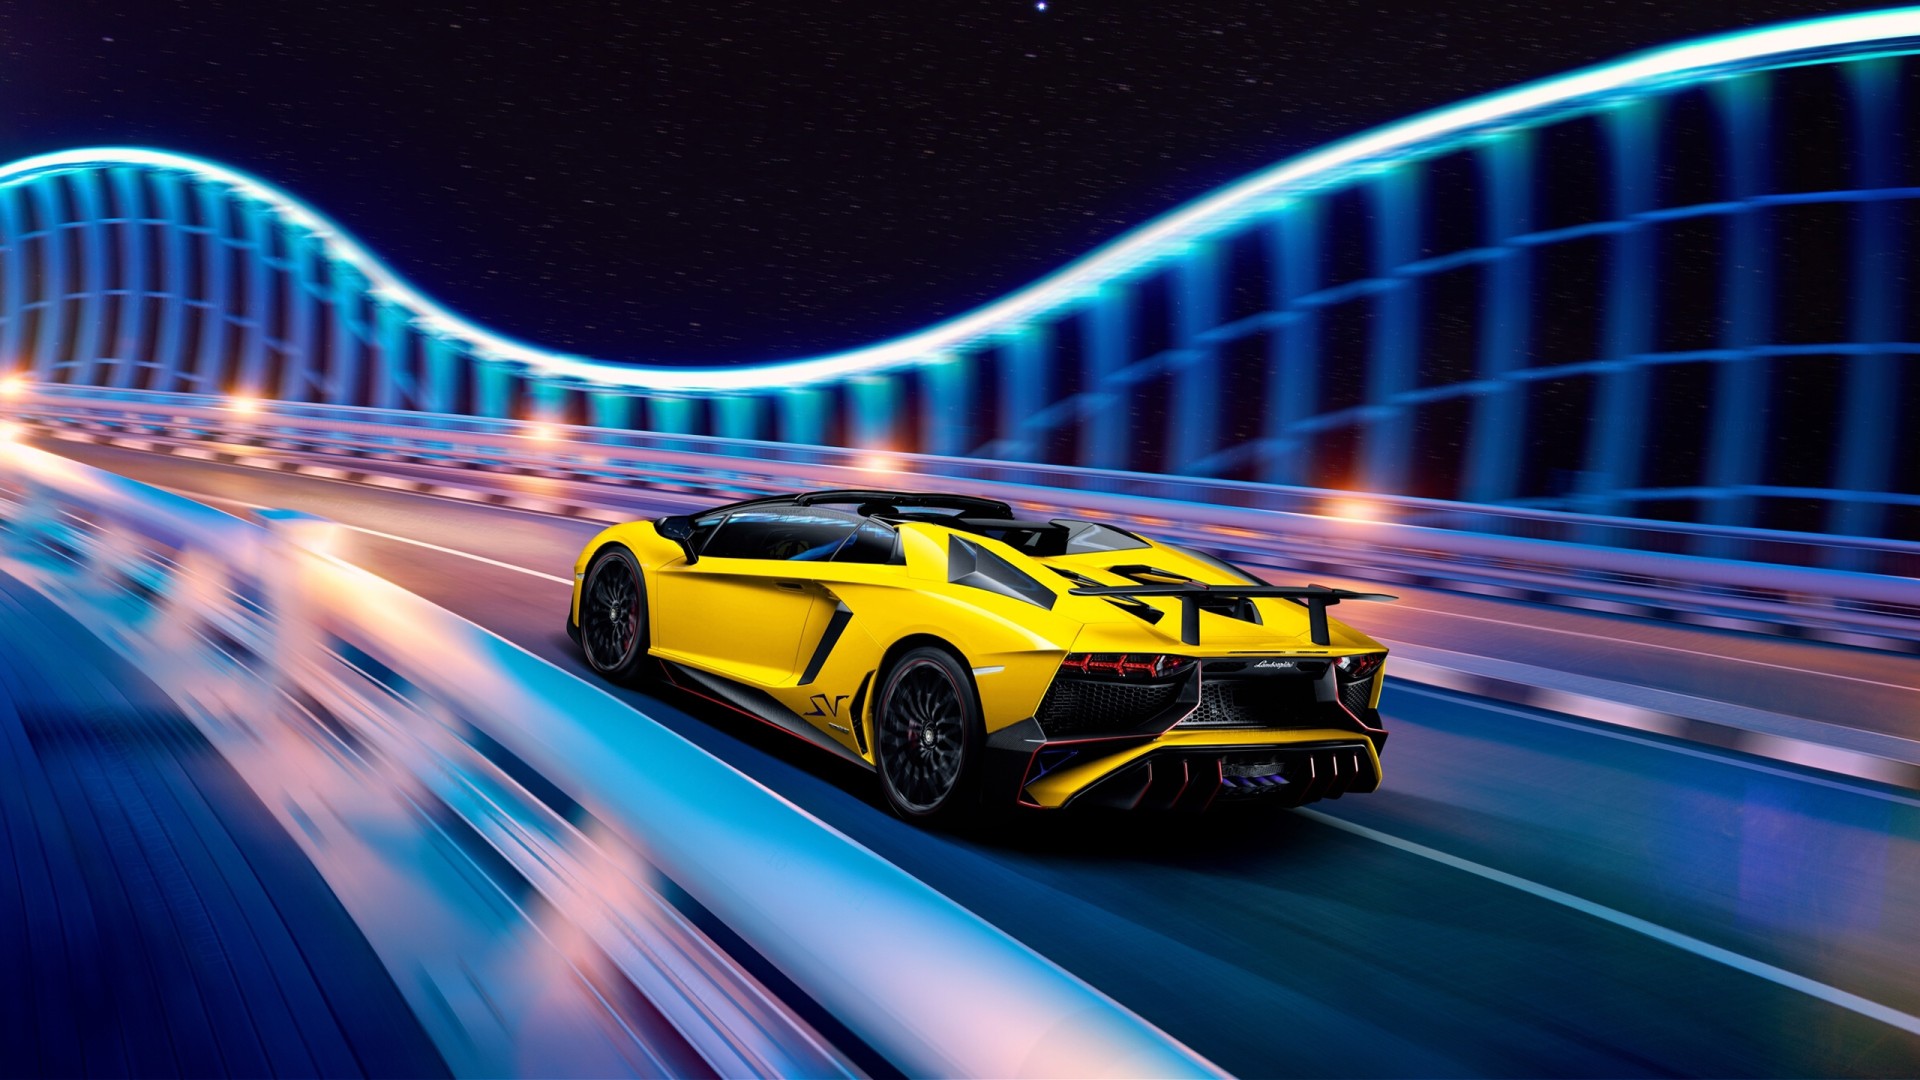 Khám phá hình ảnh về Lamborghini Aventador - một trong những siêu xe đẳng cấp nhất thế giới. Thiết kế tối tân, công nghệ tiên tiến và động cơ mạnh mẽ của chiếc xe này khiến cho bất kỳ ai cũng phải ấn tượng và mong muốn được trải nghiệm.